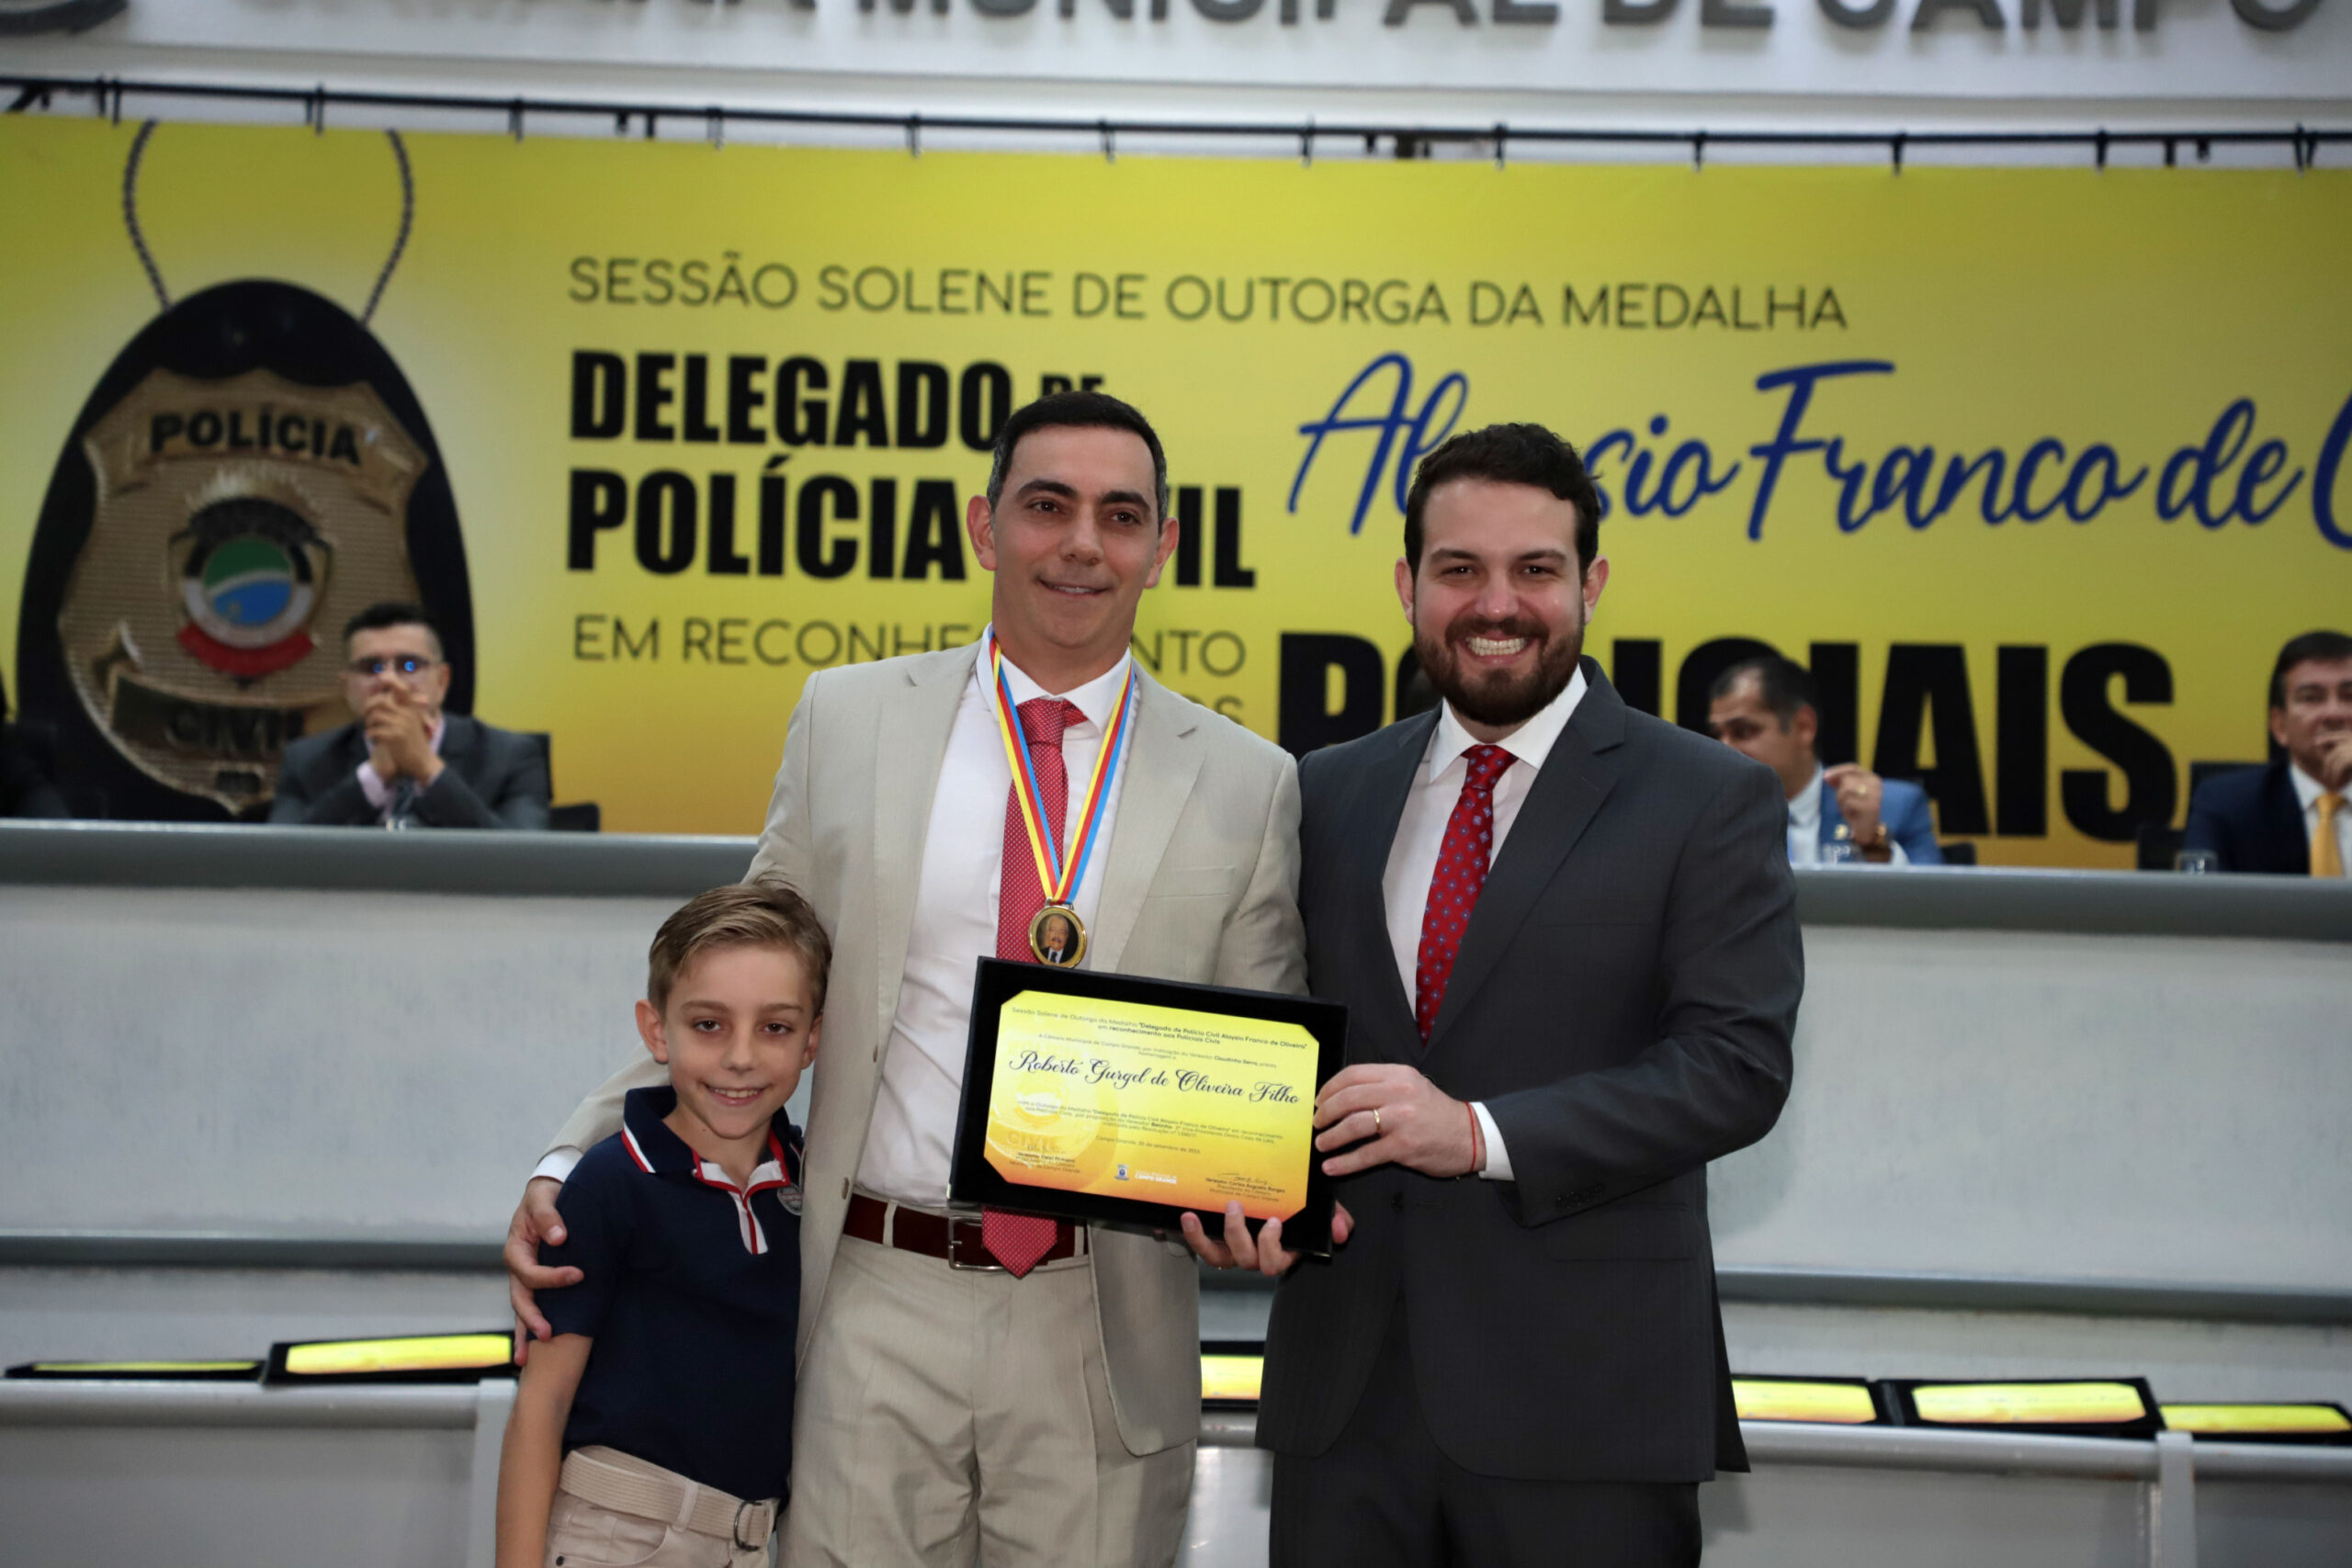 Academia de Polícia da Polícia Civil de Mato Grosso, recebe Dr